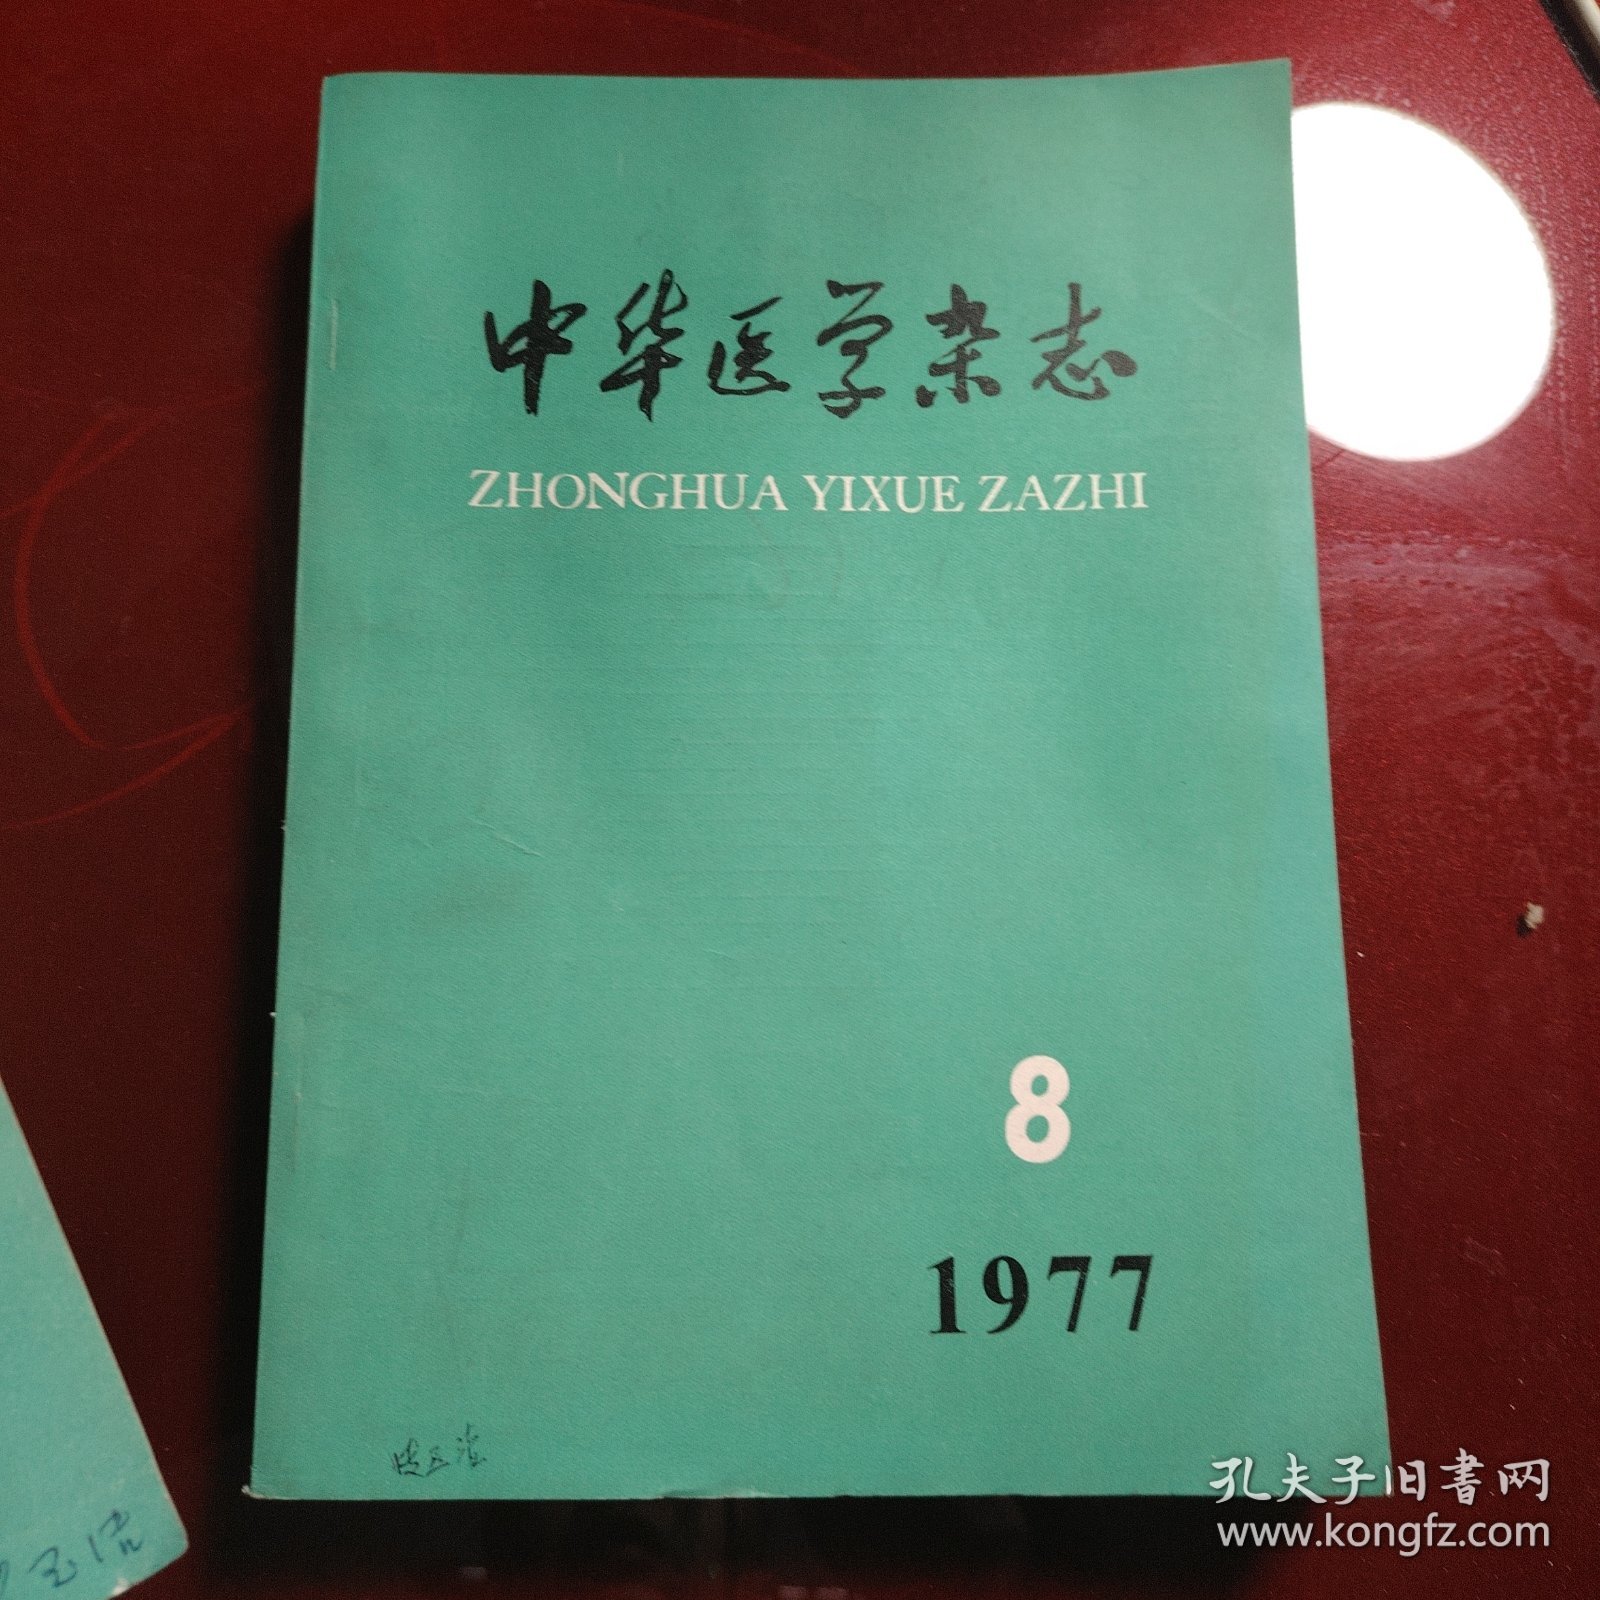 中华医学杂志 1977年第2期 第8期 第9期 第10期 第11期 第12期 6册合售60元